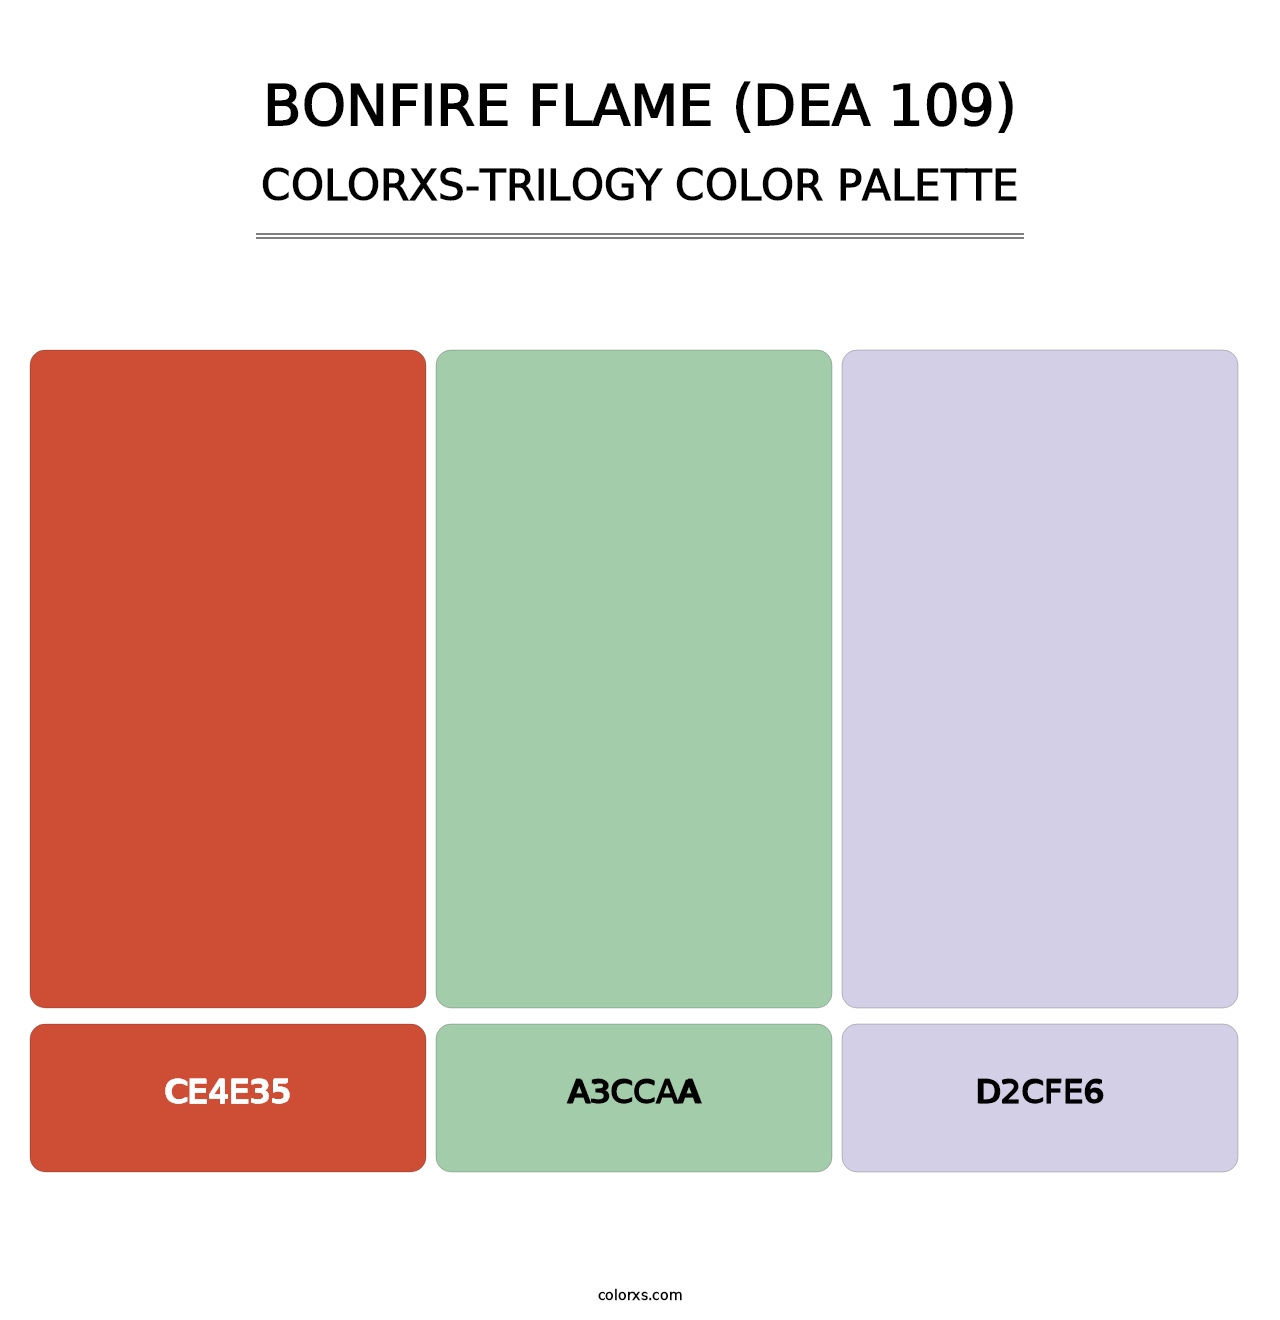 Bonfire Flame (DEA 109) - Colorxs Trilogy Palette